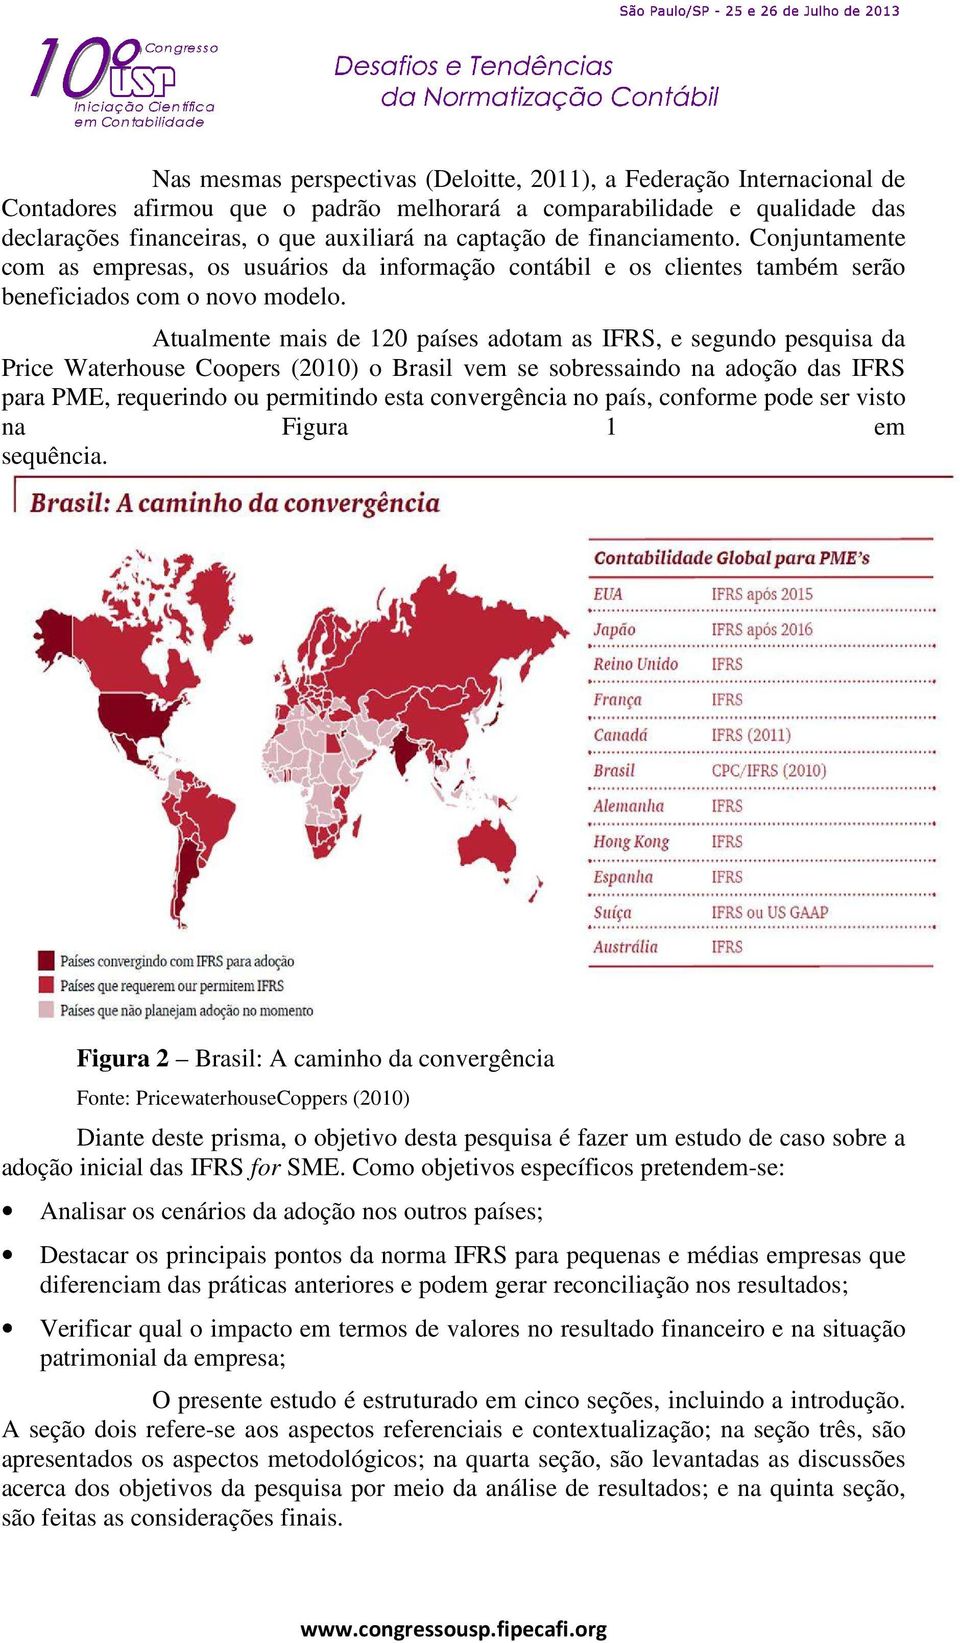 Atualmente mais de 120 países adotam as IFRS, e segundo pesquisa da Price Waterhouse Coopers (2010) o Brasil vem se sobressaindo na adoção das IFRS para PME, requerindo ou permitindo esta